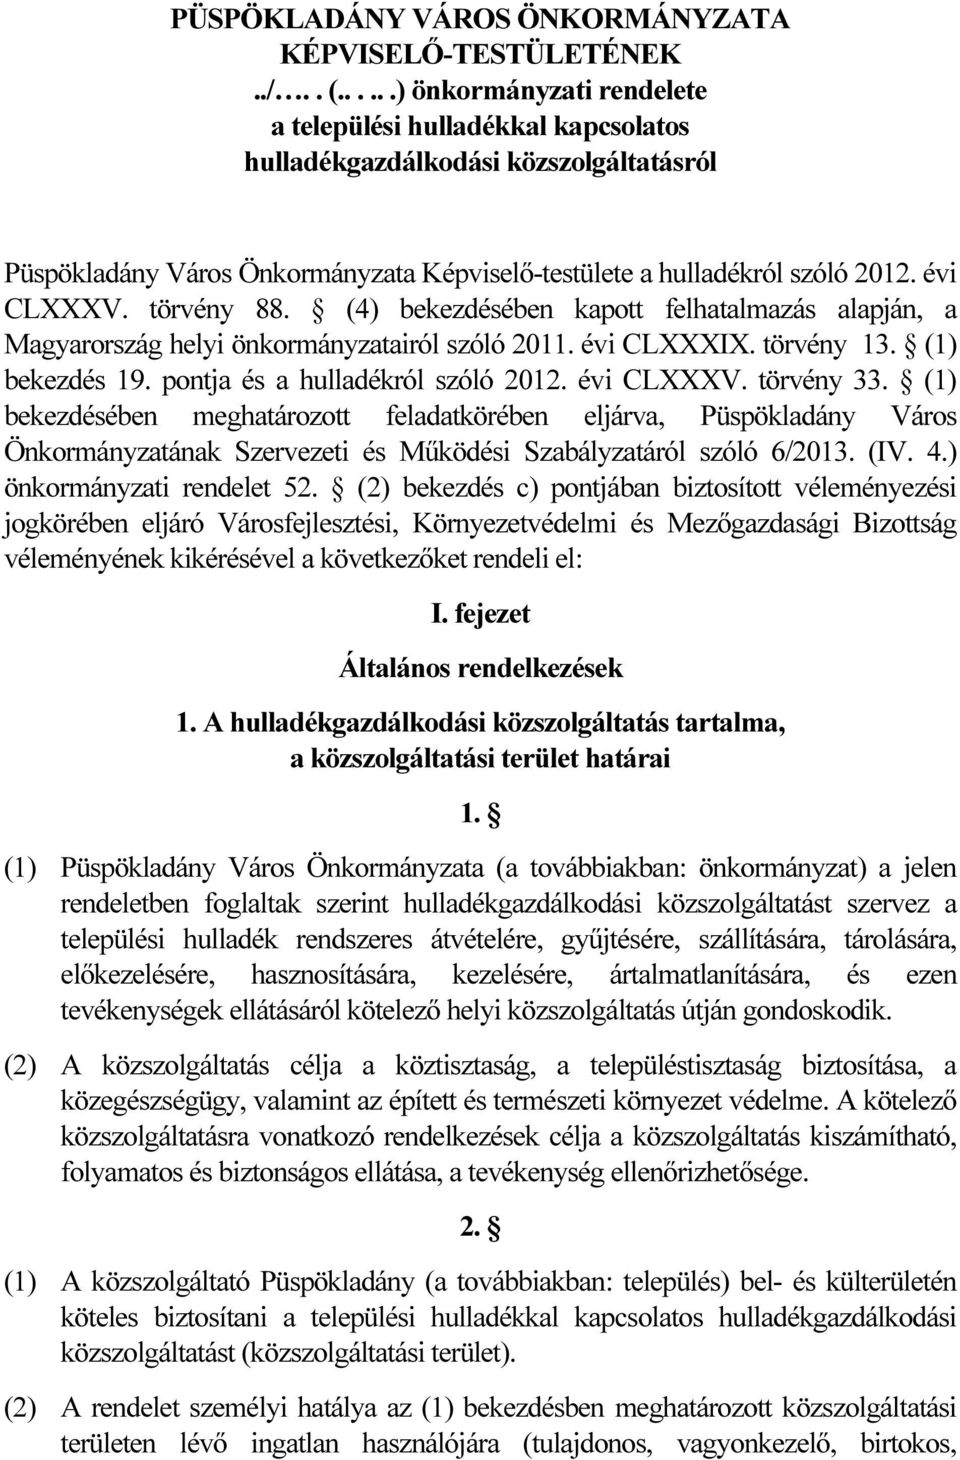 törvény 88. (4) bekezdésében kapott felhatalmazás alapján, a Magyarország helyi önkormányzatairól szóló 2011. évi CLXXXIX. törvény 13. (1) bekezdés 19. pontja és a hulladékról szóló 2012. évi CLXXXV.